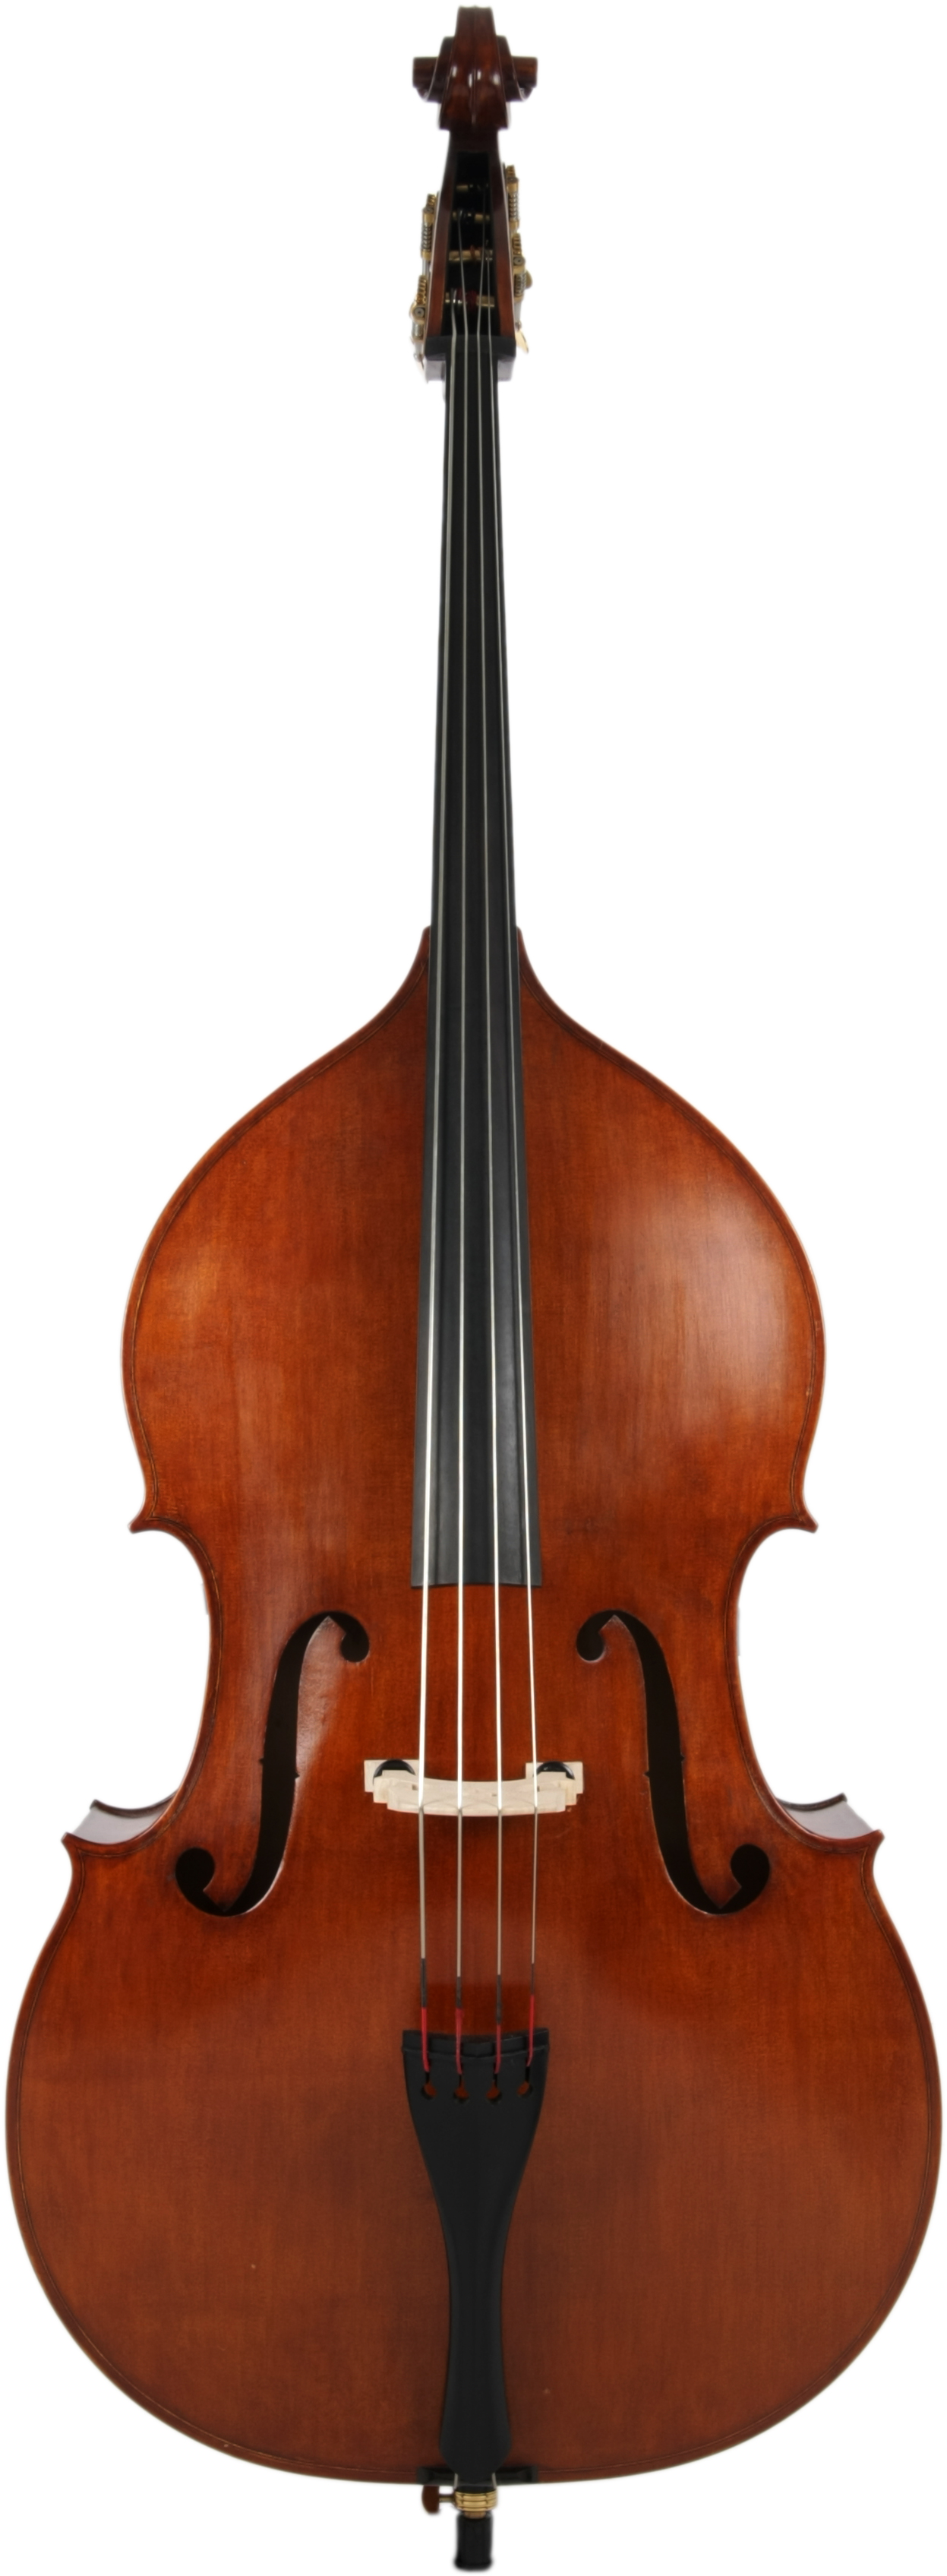 Kontrabassgarnitur 3/4 Violinform, Inklusive Bogen und Gigbag